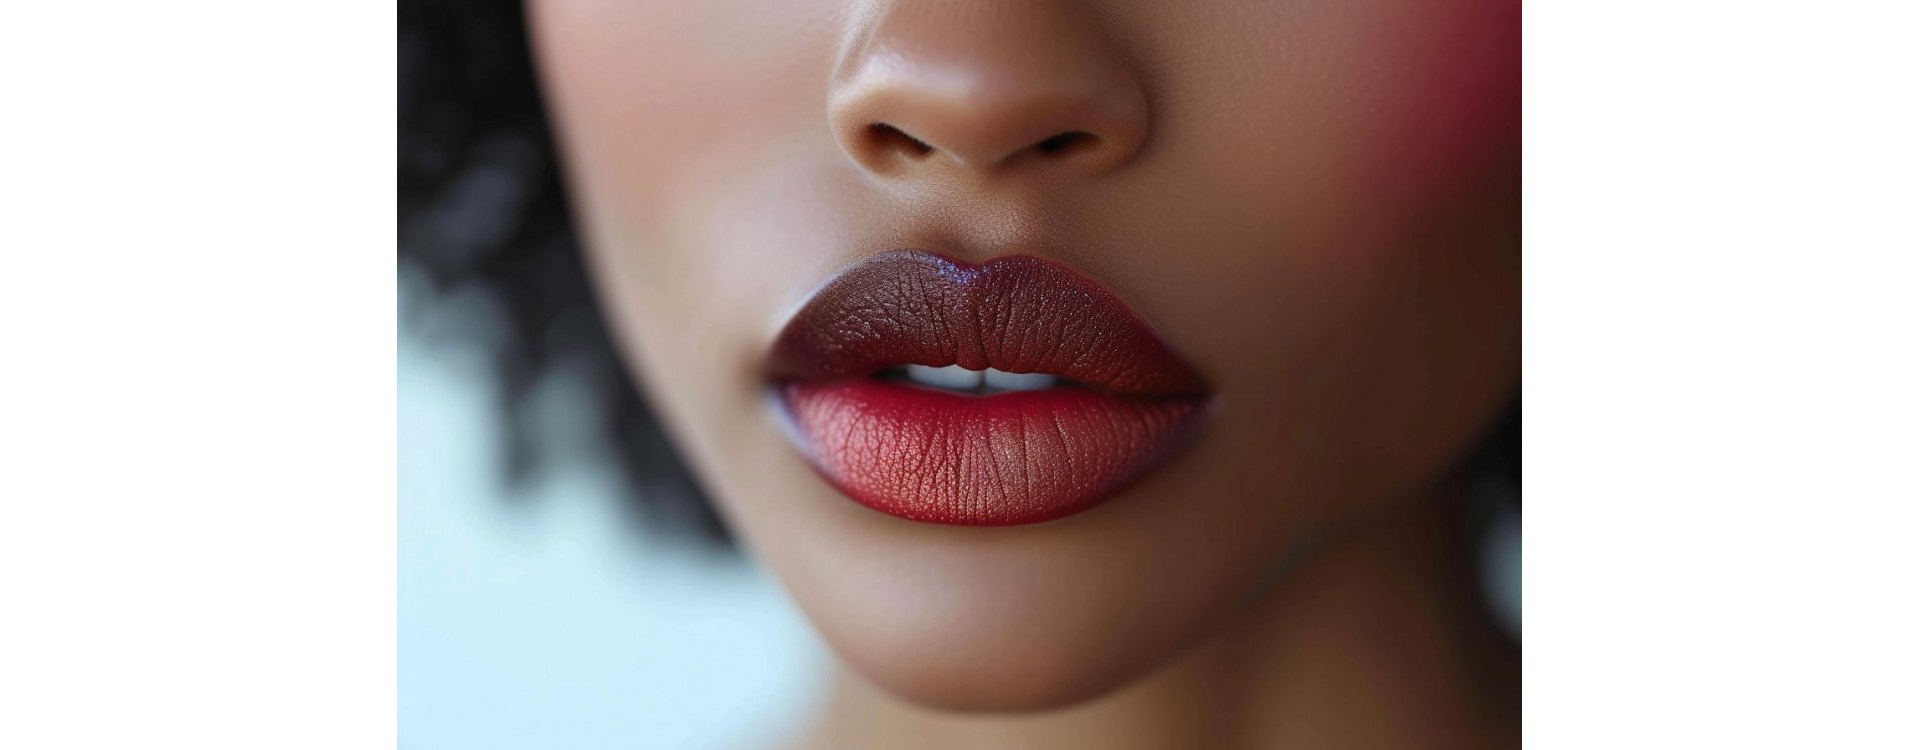 La nouvelle tendance beauté : des lèvres sublimées grâce à l'anti-cernes